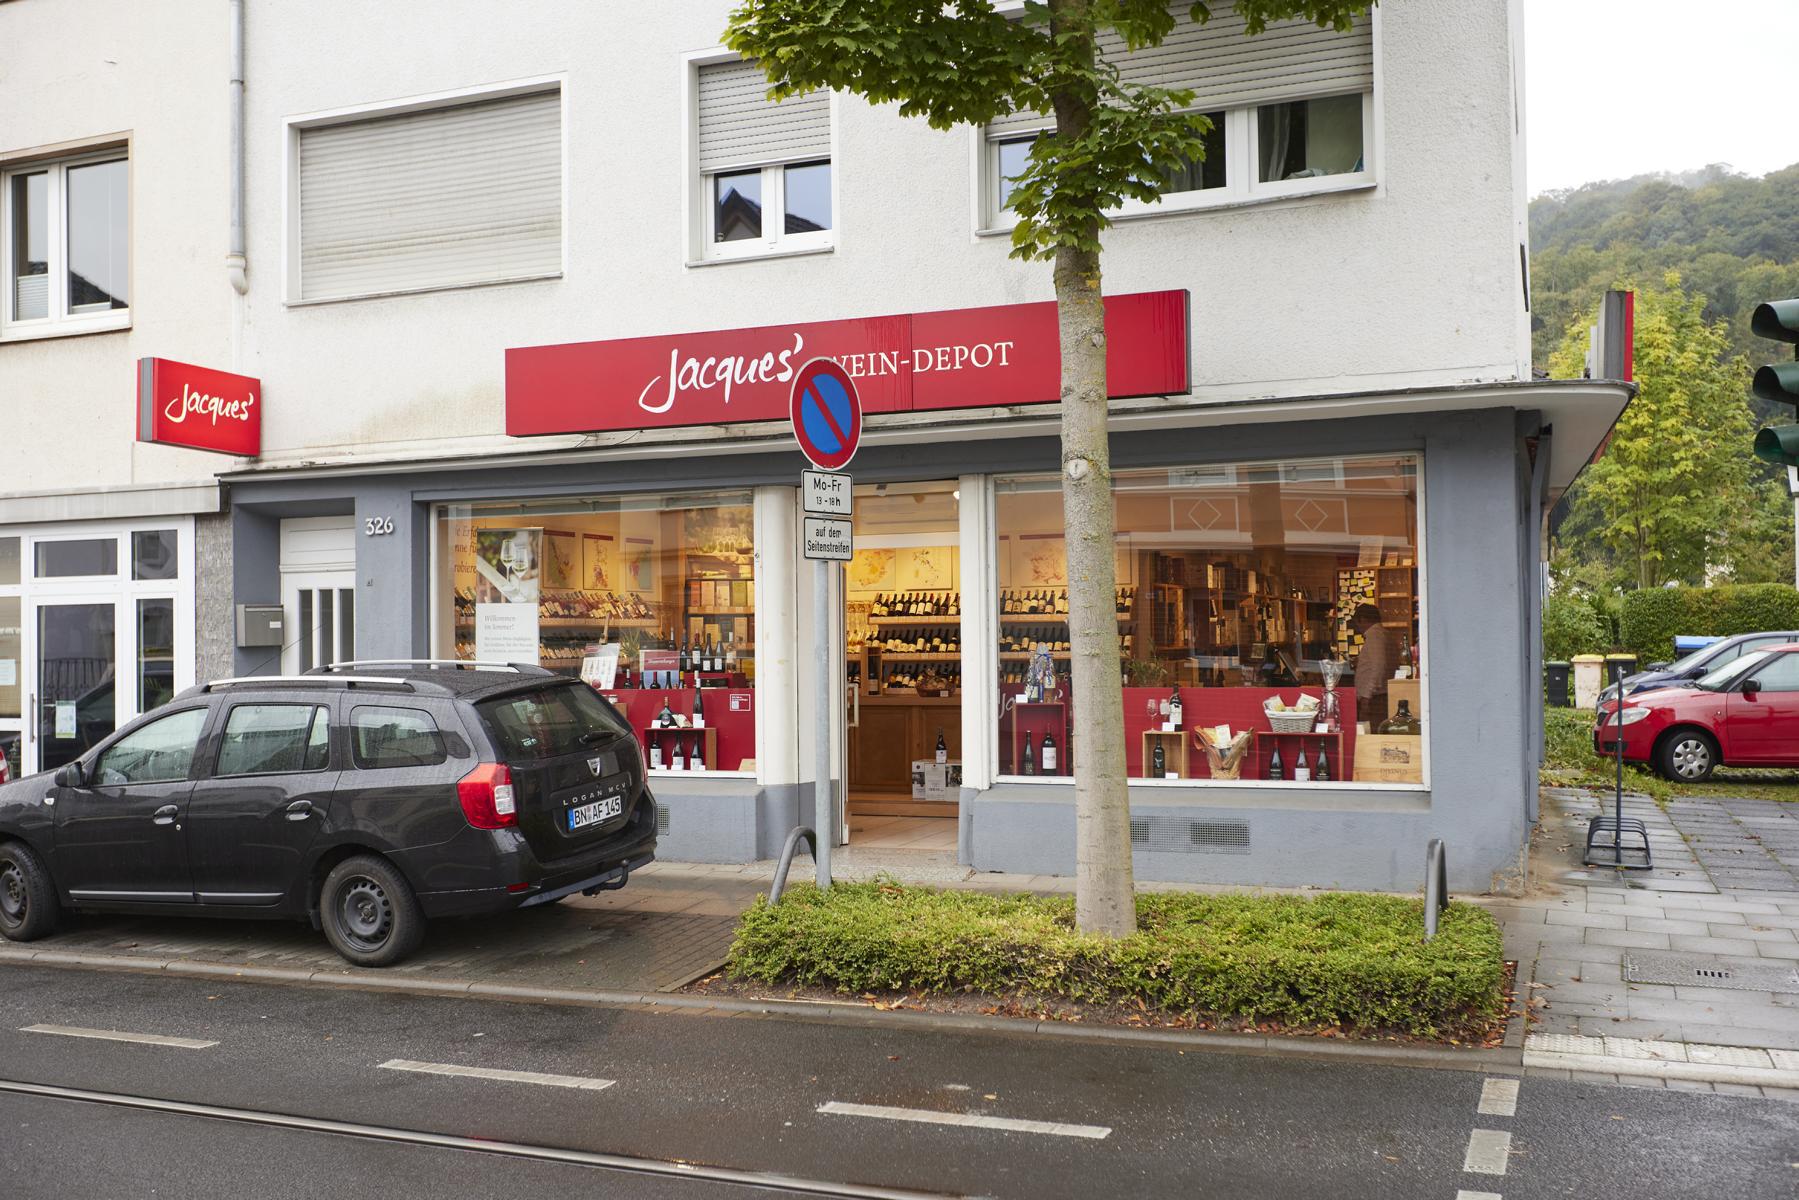 Jacques’ Wein-Depot Bonn-Dottendorf, Hausdorffstraße 326 in Bonn